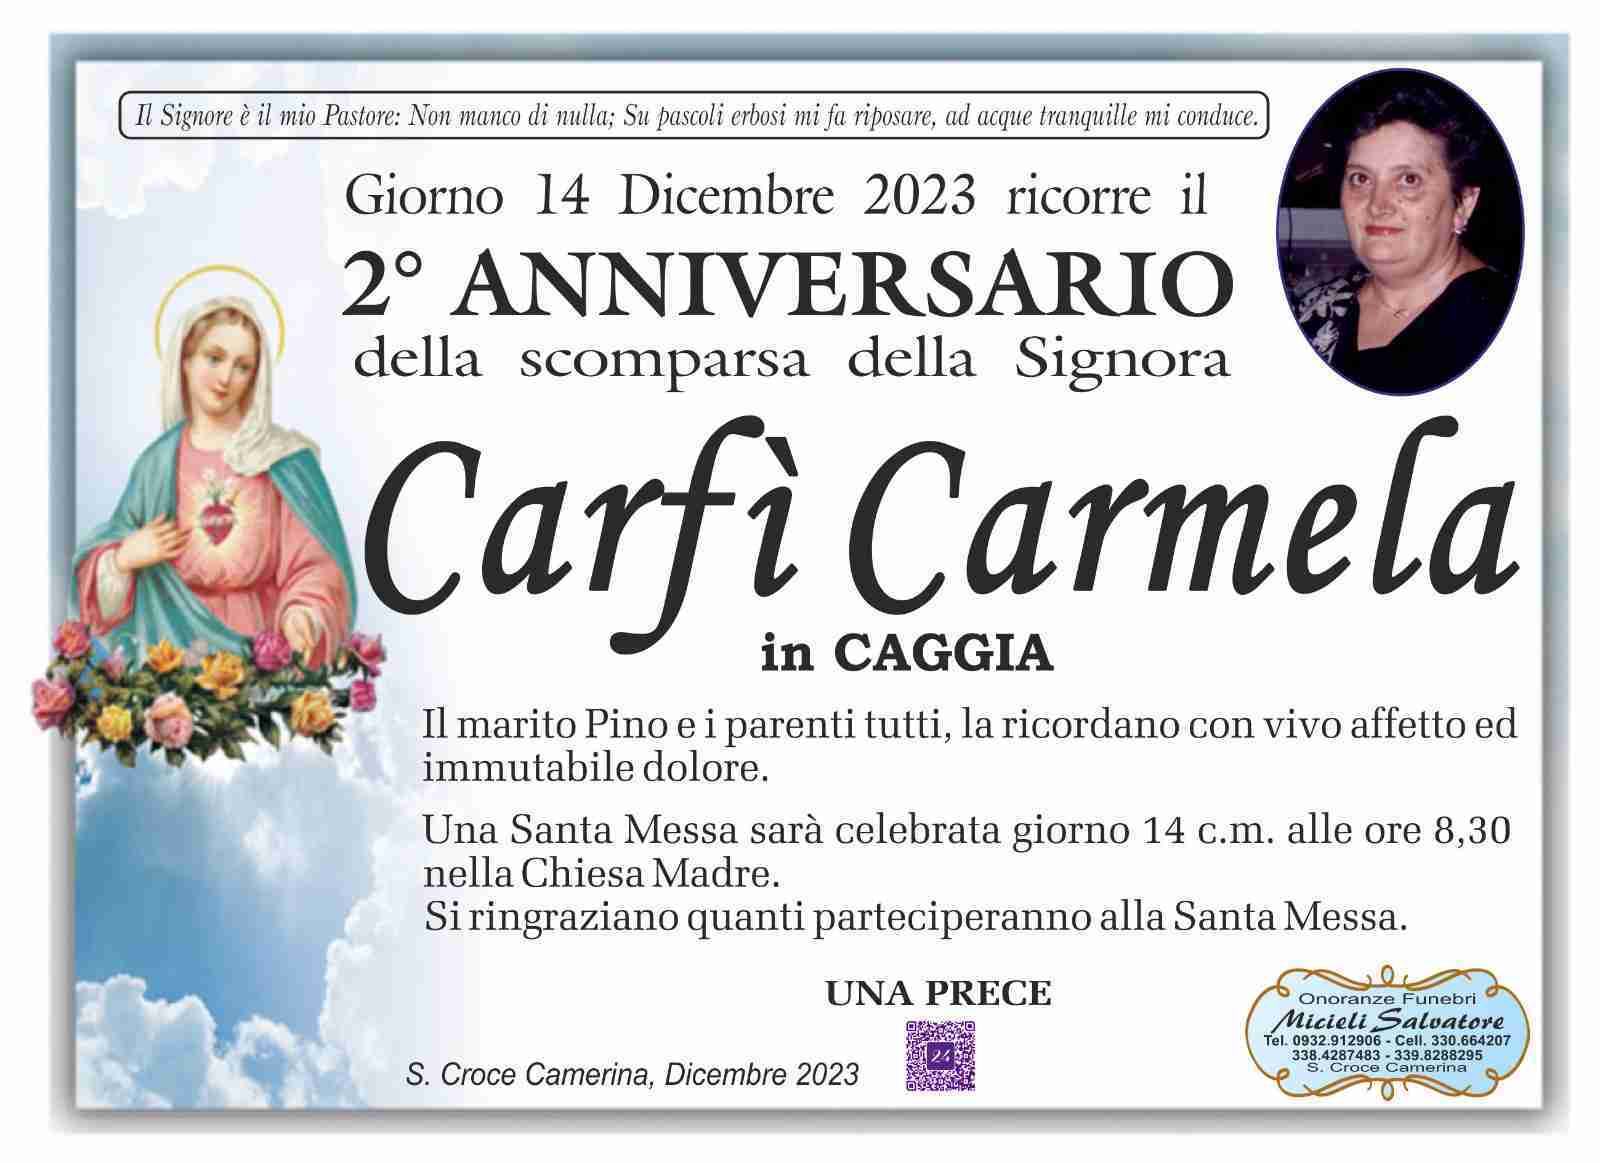 Carmela Carfì